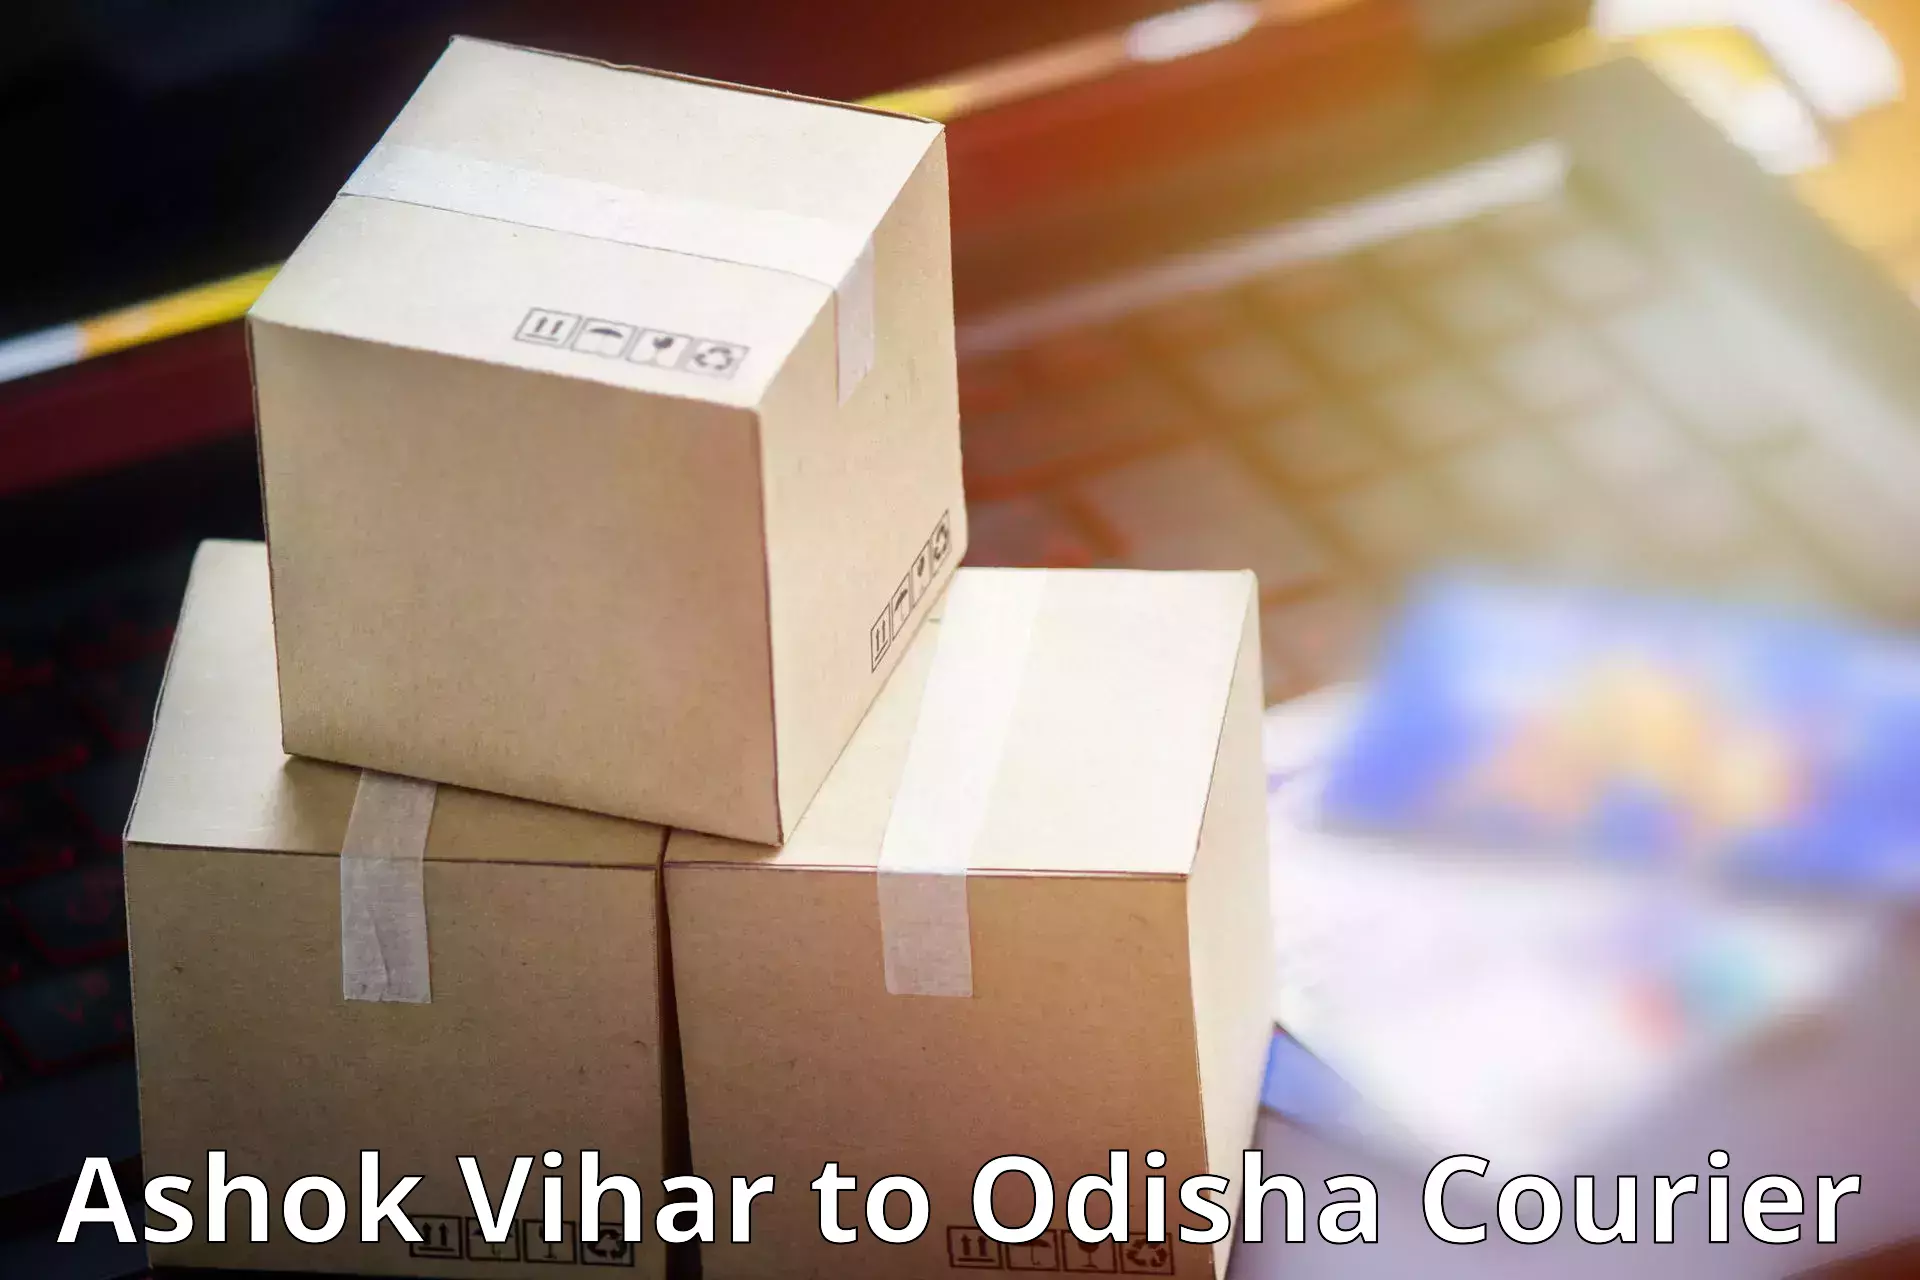 Affordable parcel service Ashok Vihar to Astaranga